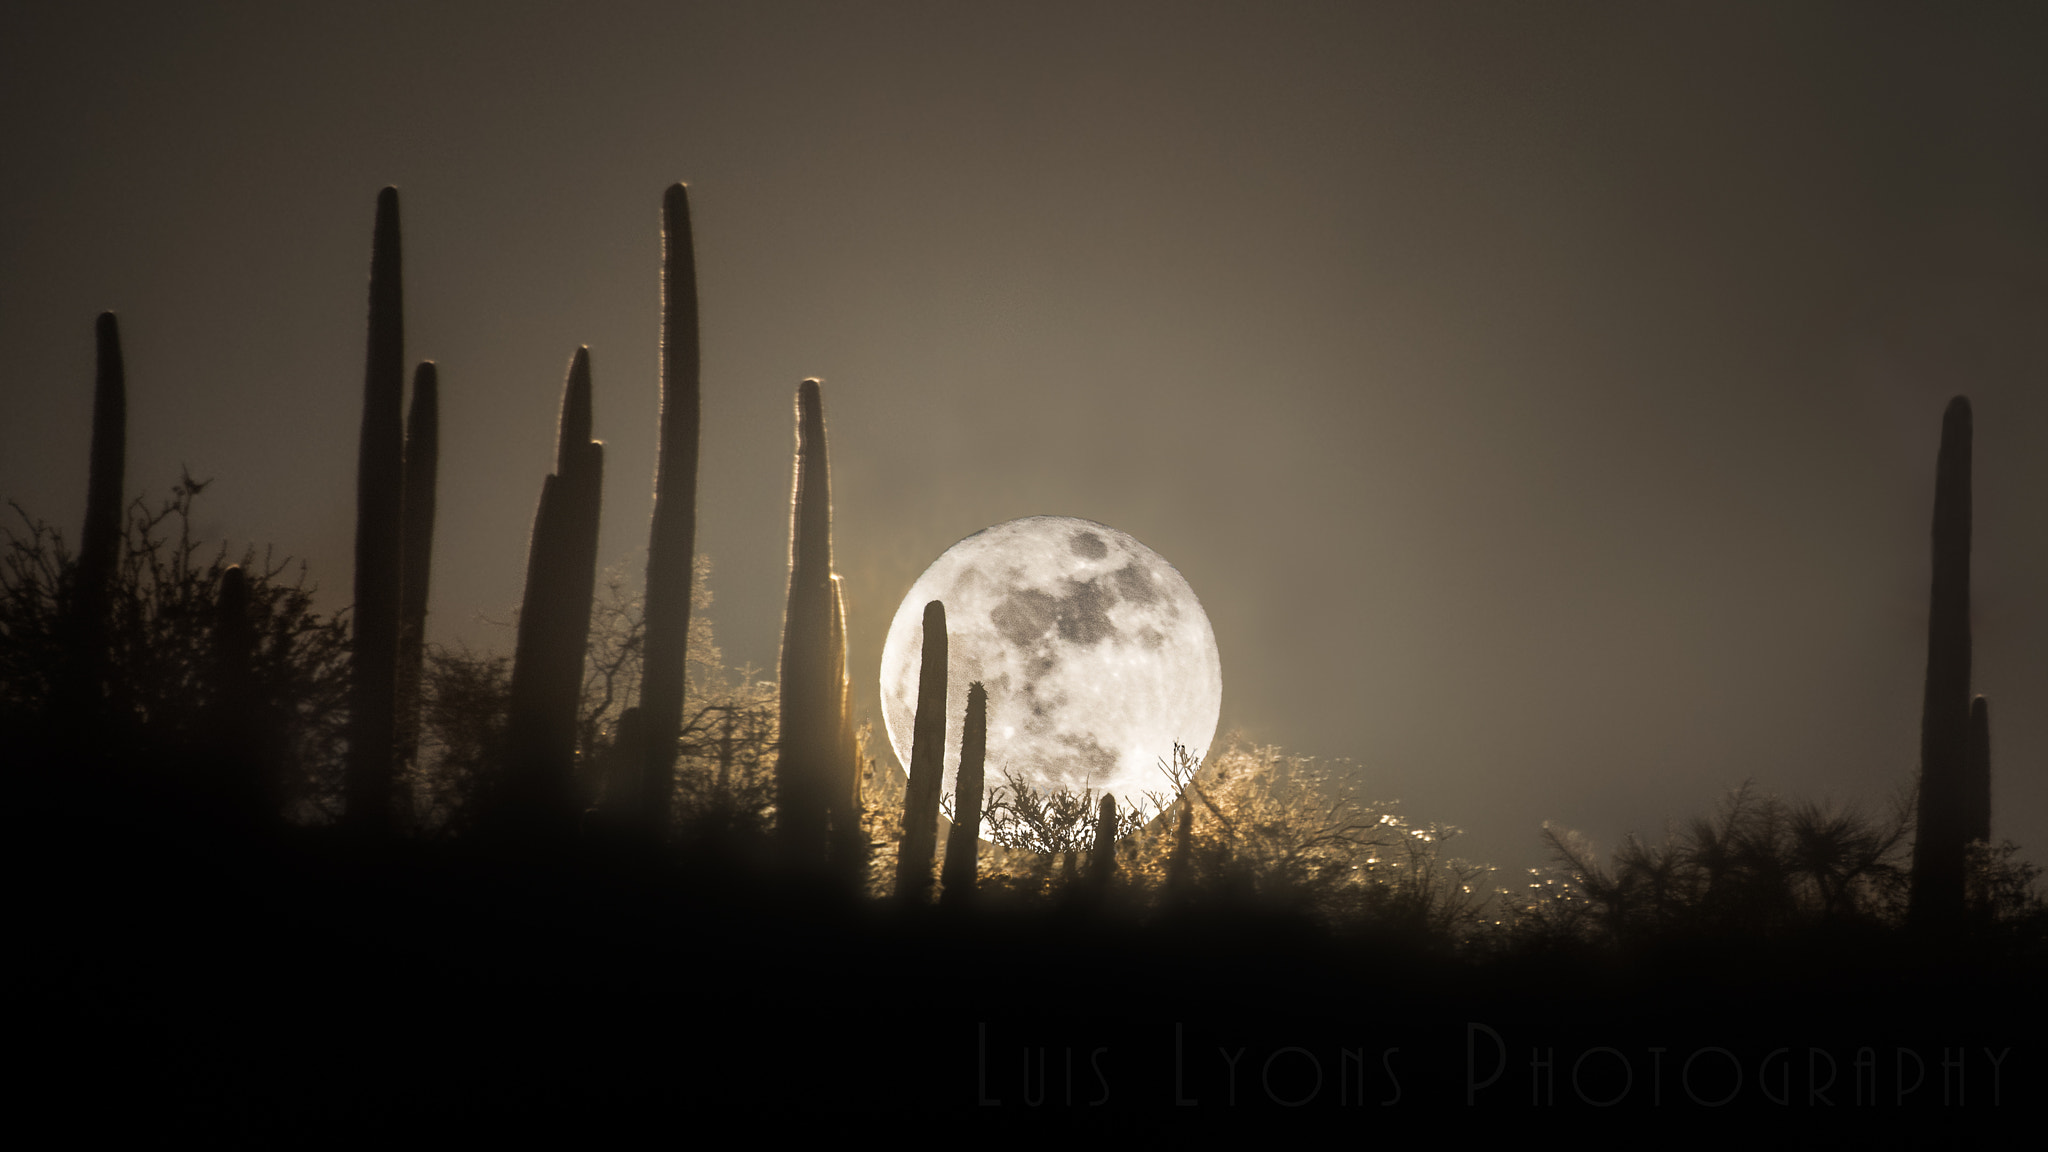 Nikon D5500 sample photo. Super moon rising over a mexican desert photography